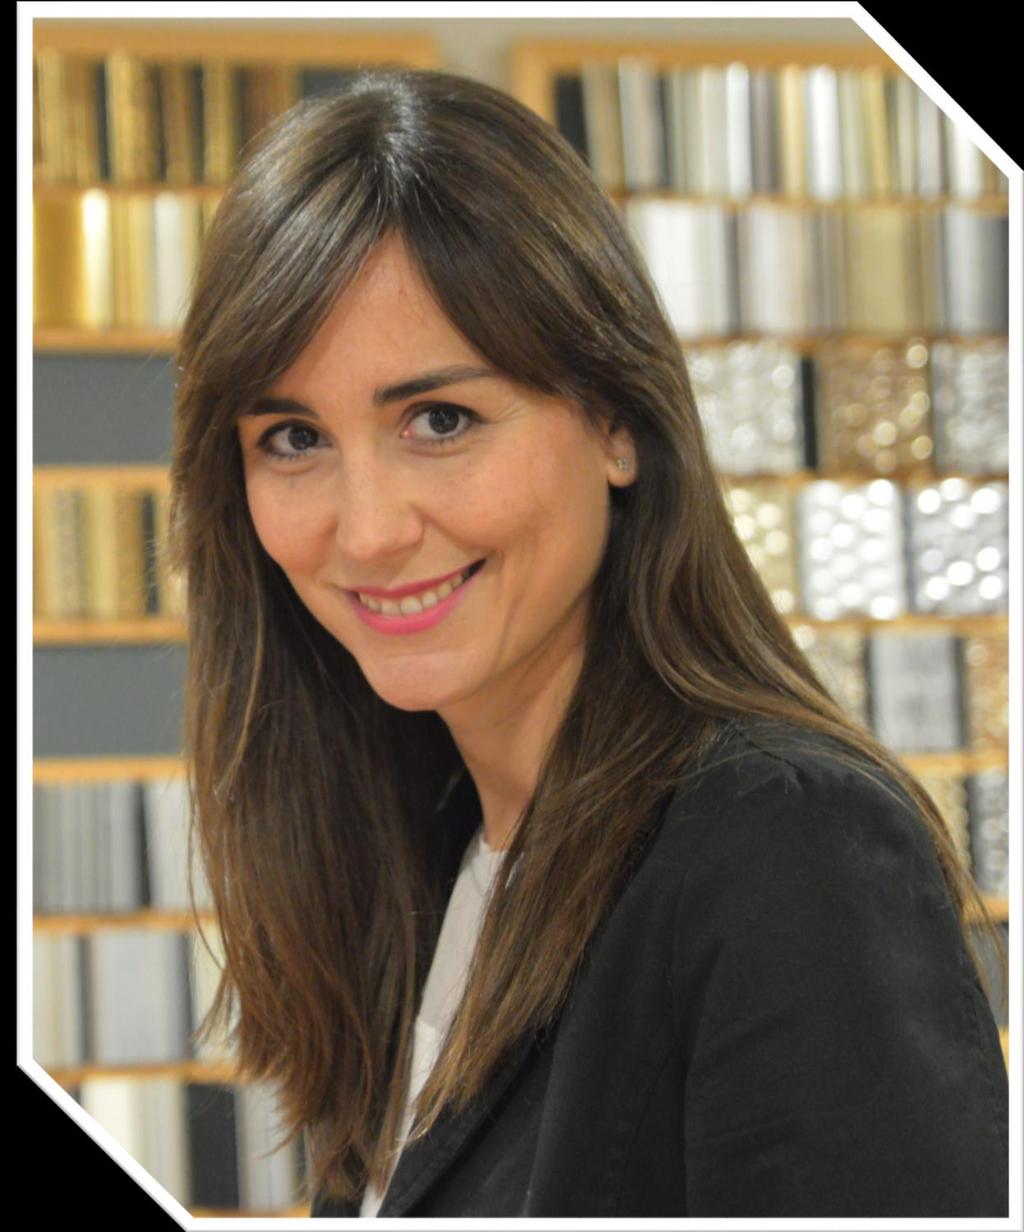 Imparte Raquel Aullón es licenciada en Ciencias de la Información, especialidad de Periodismo, por la Universidad Complutense de Madrid.